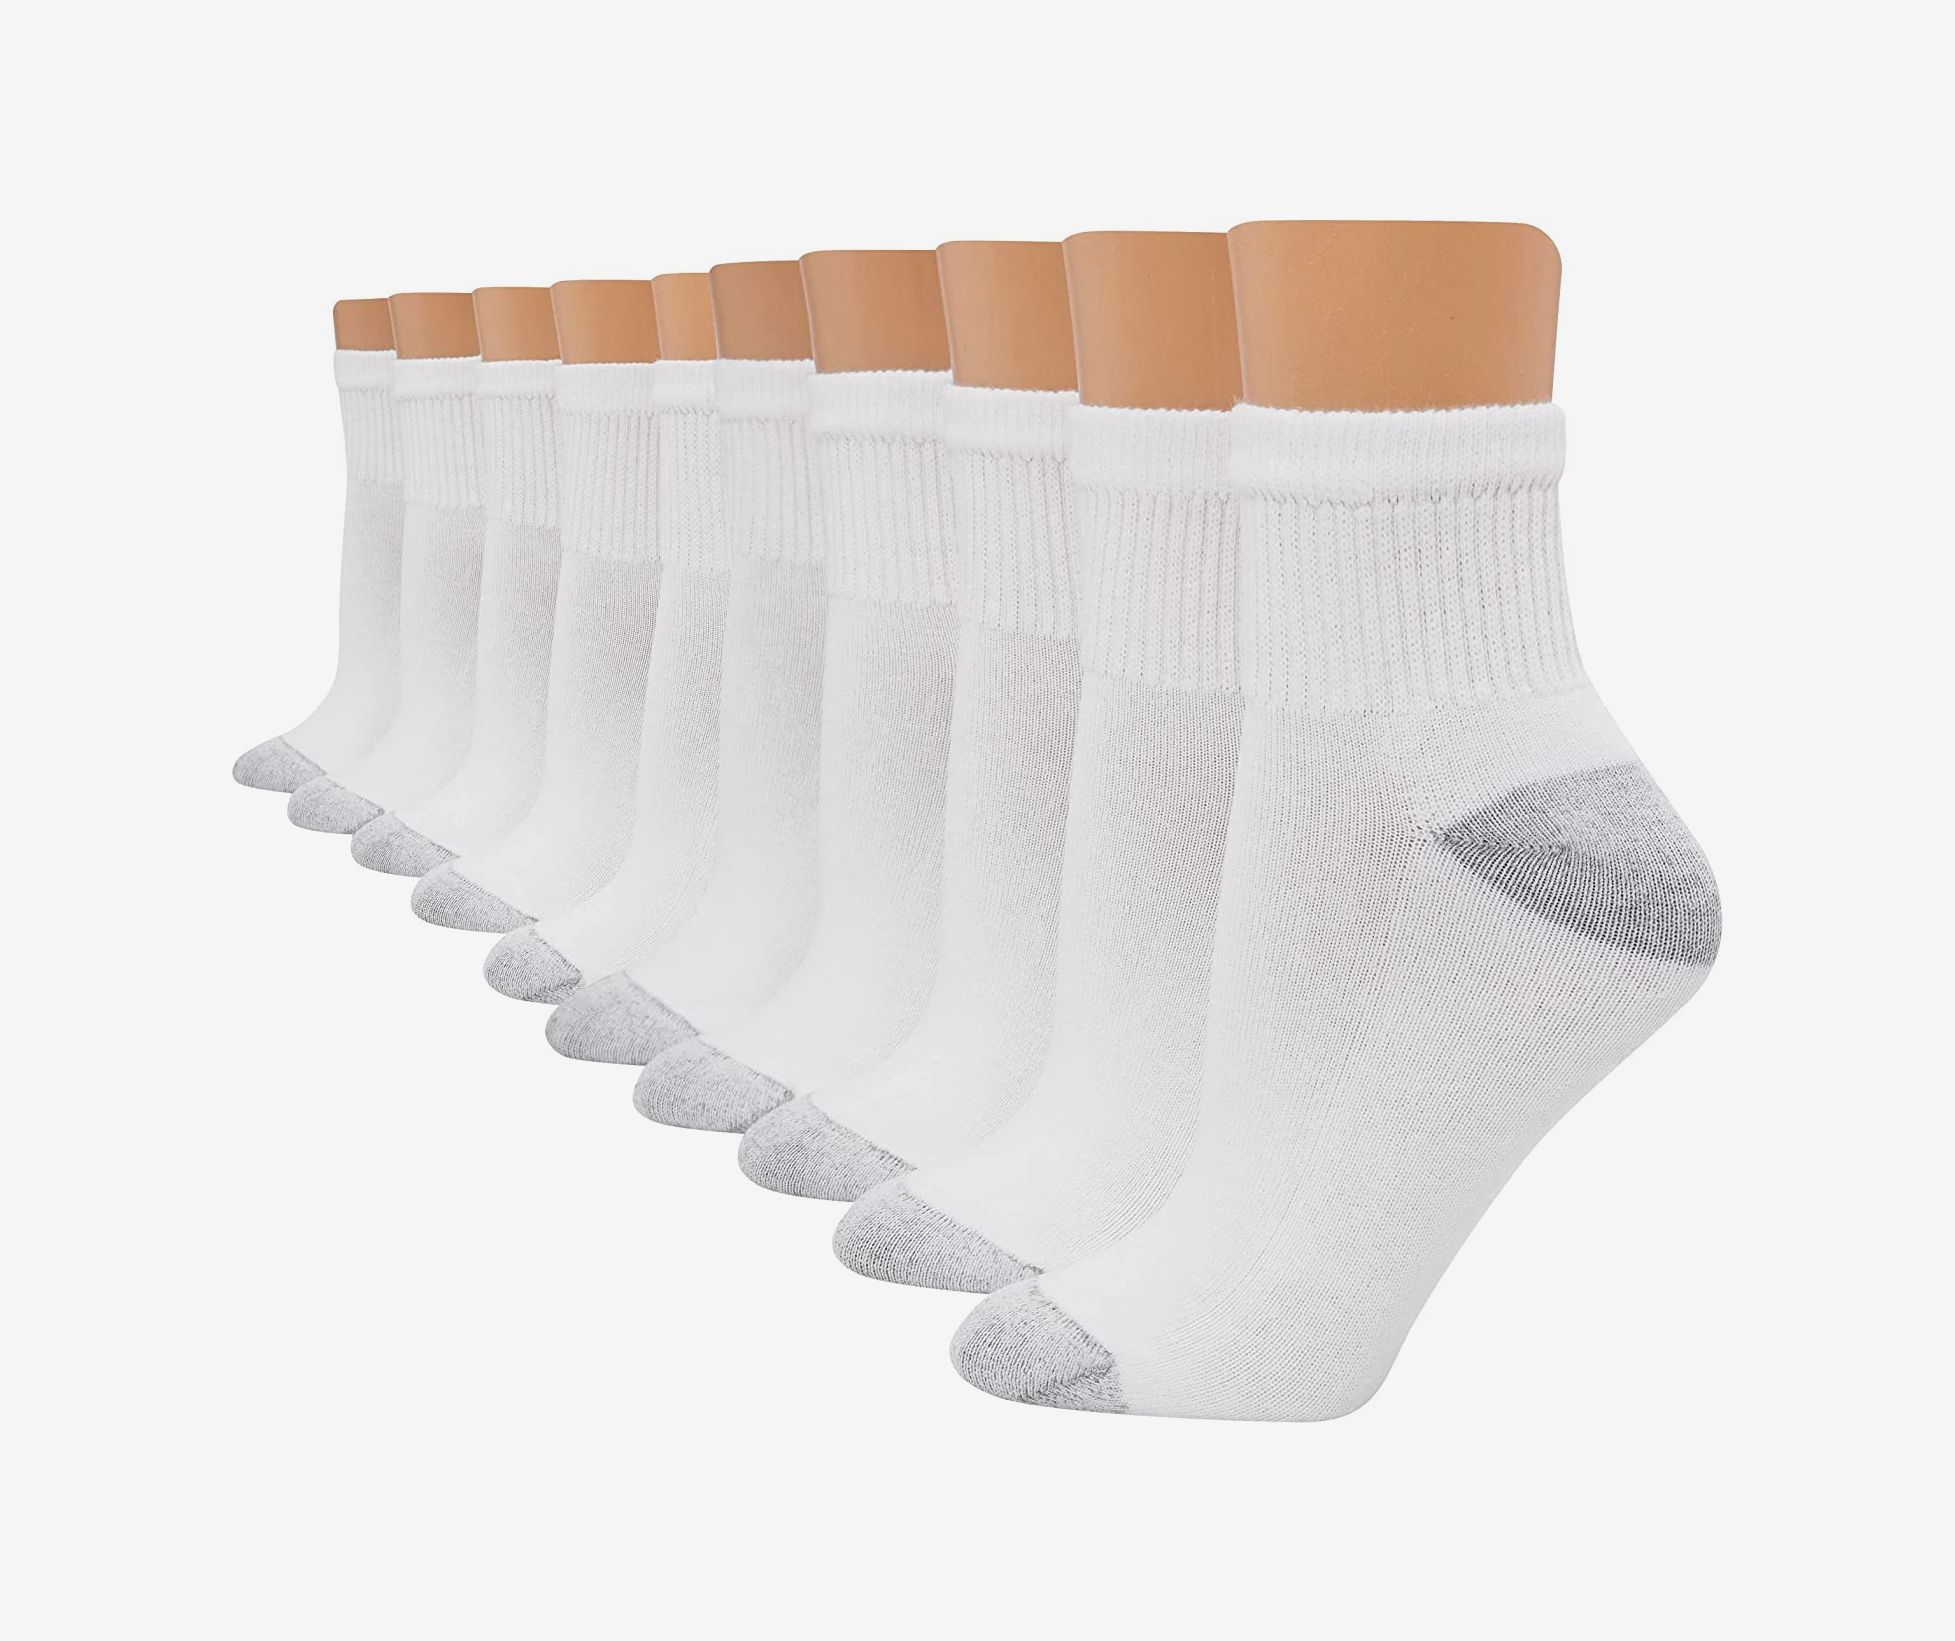 How to Whiten Socks: Make Your White Socks Look Brand New.